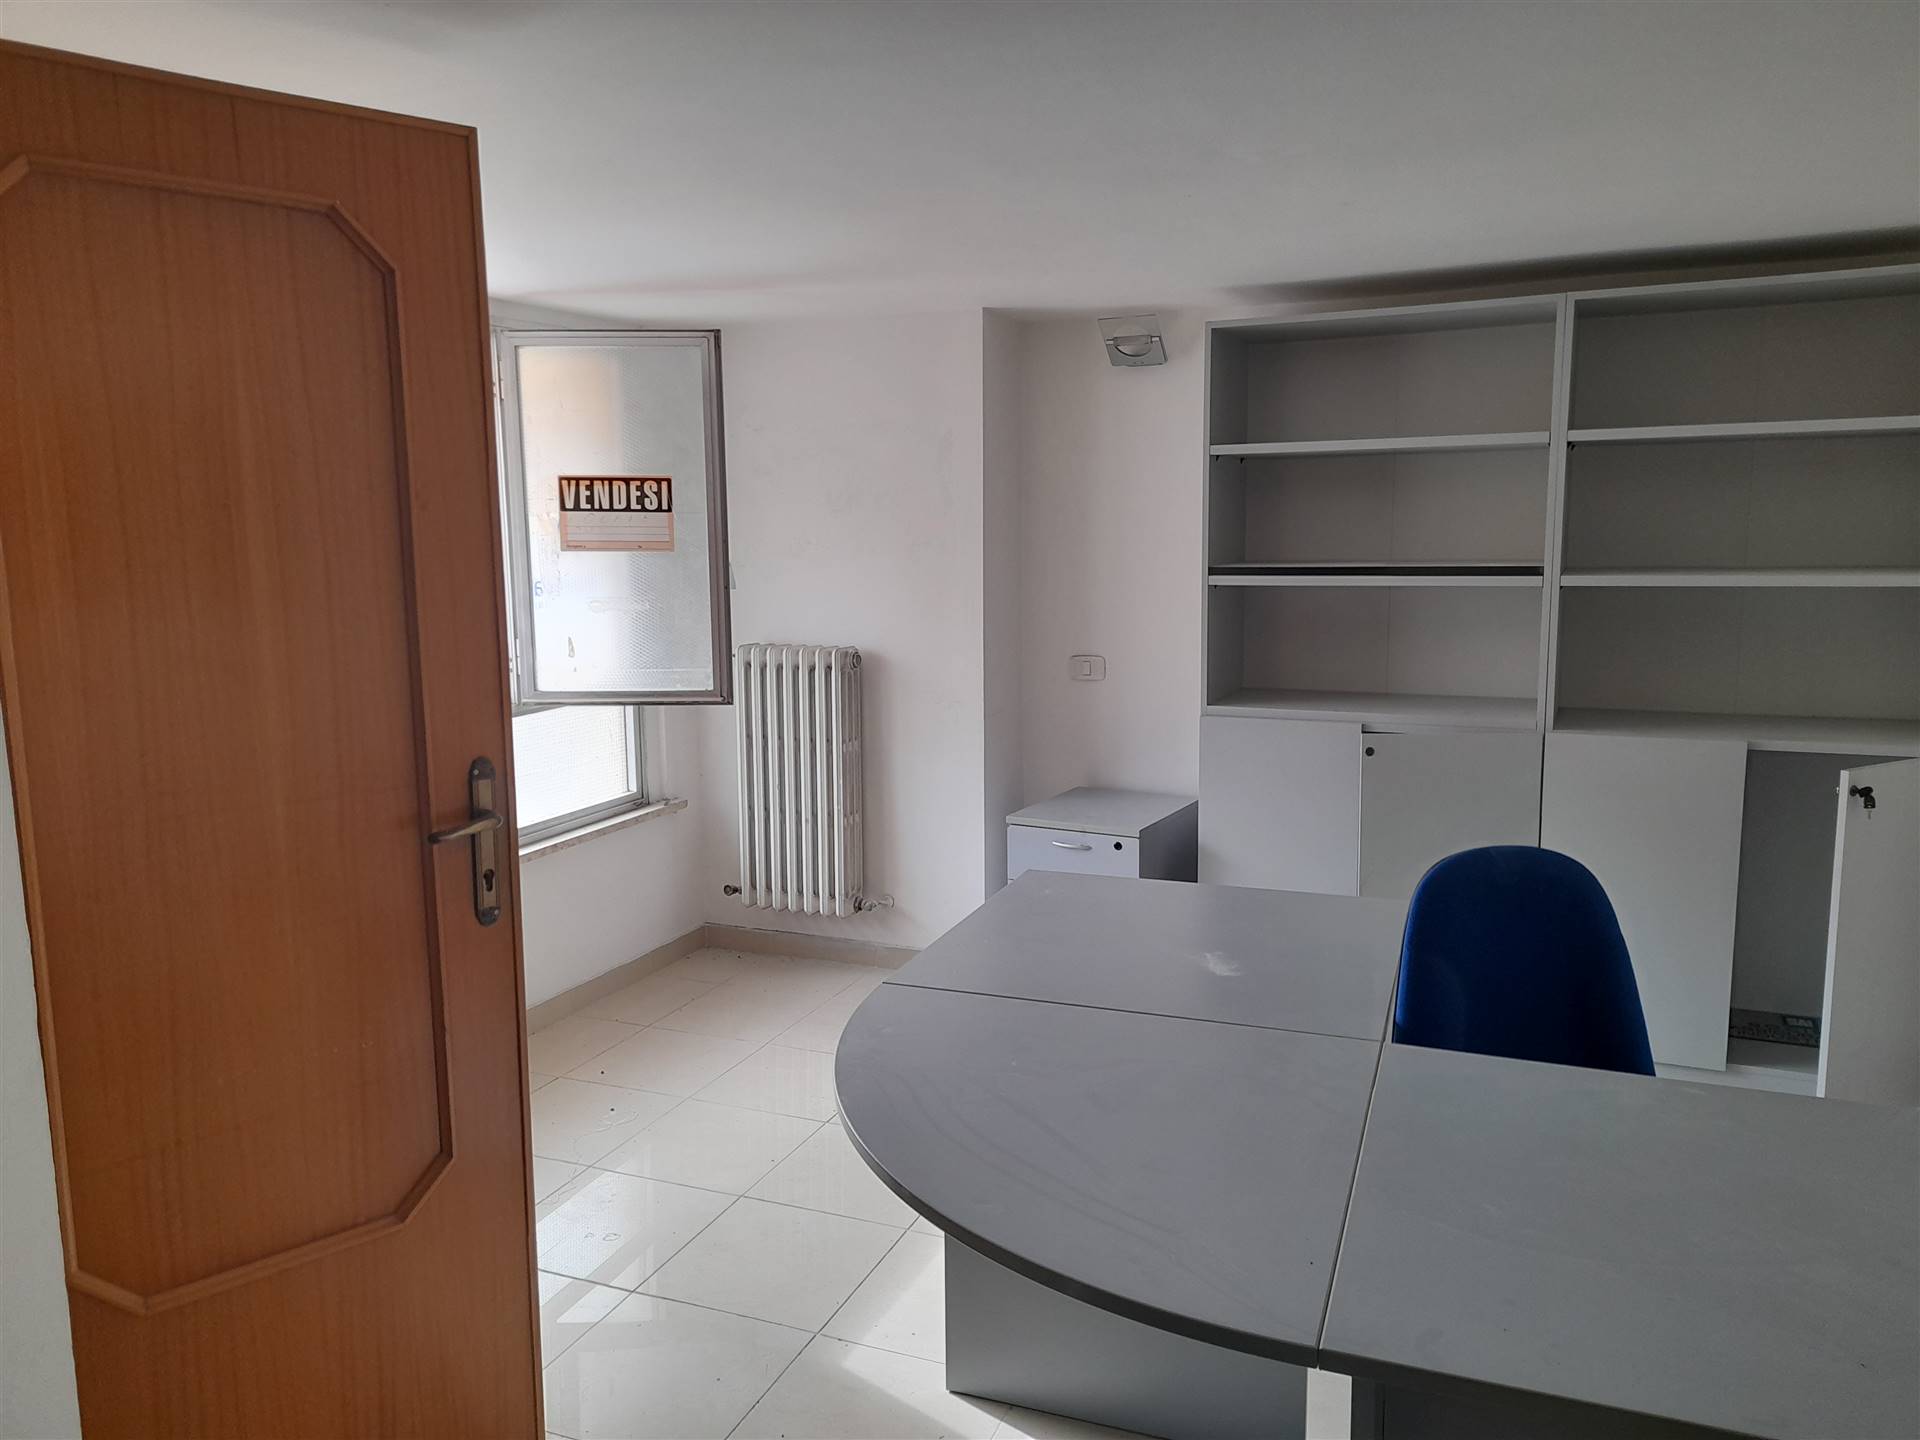 V - 710 L'agenzia immobiliare Aliservice propone in vendita a San Salvo in via Trignina un locale uso ufficio di mq 22 con bagno posto al primo piano.